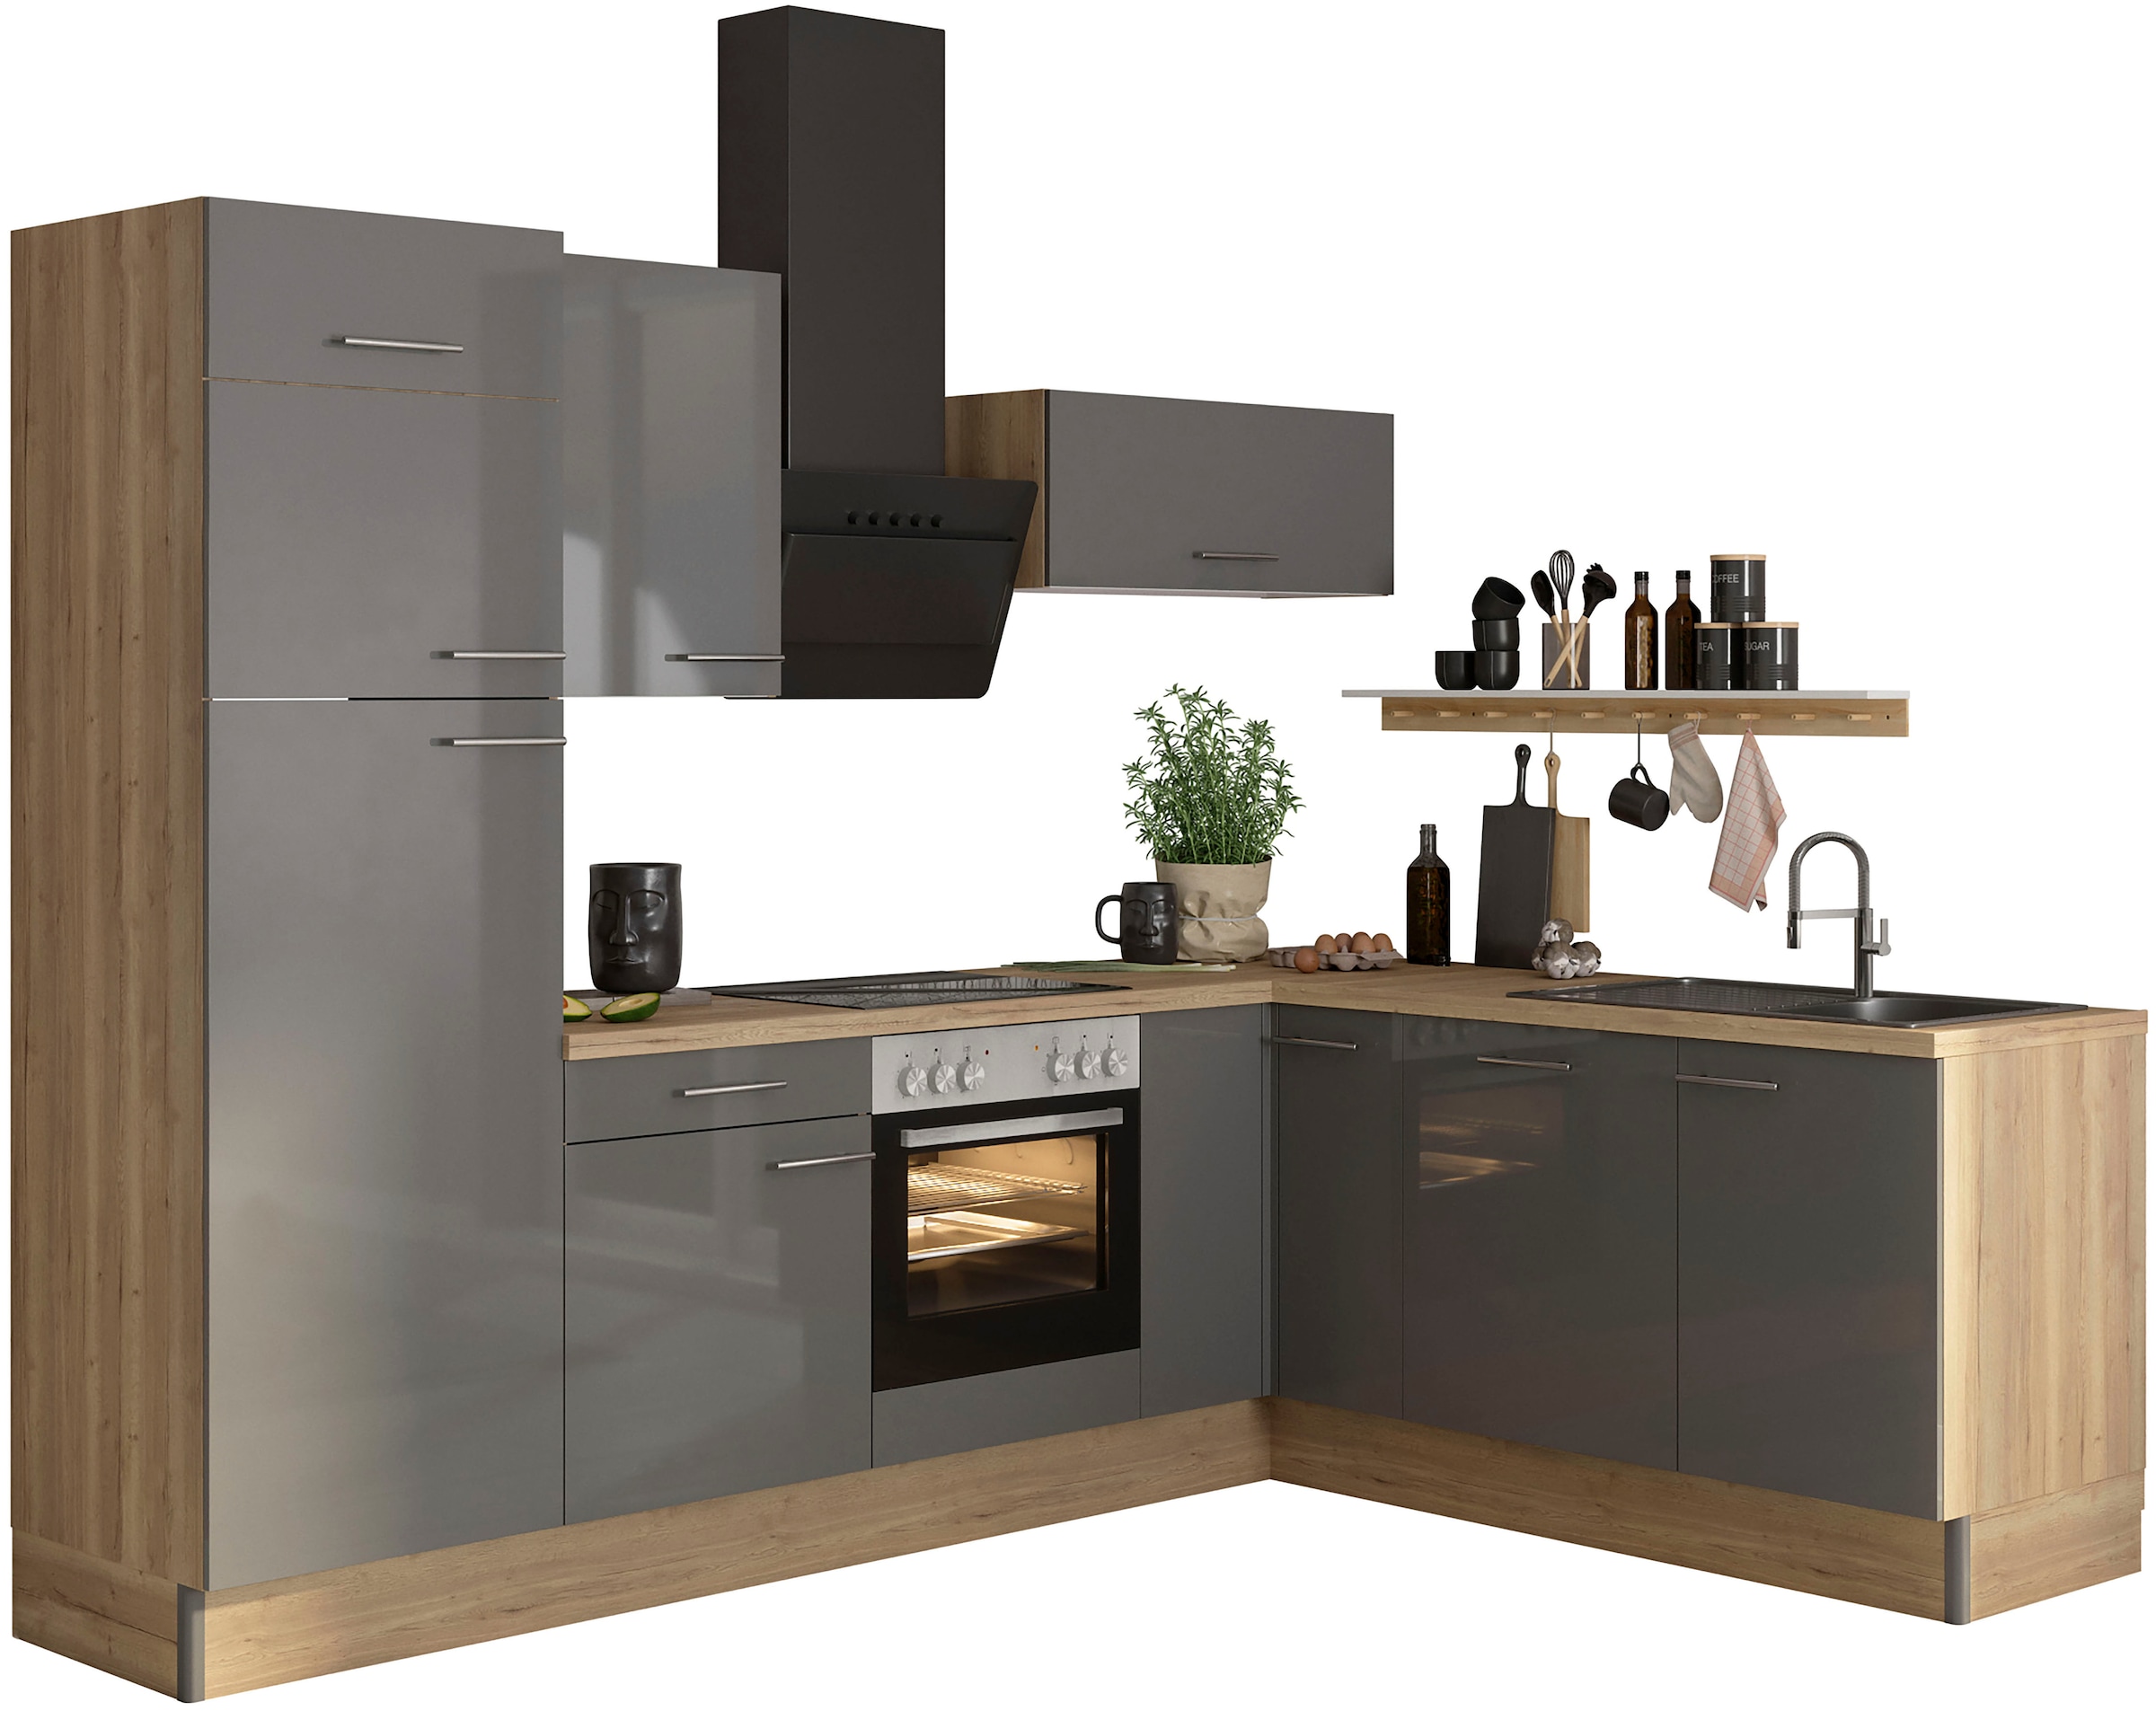 OPTIFIT Küche "Klara", 270 x 200 cm breit, wahlweise mit E-Geräten